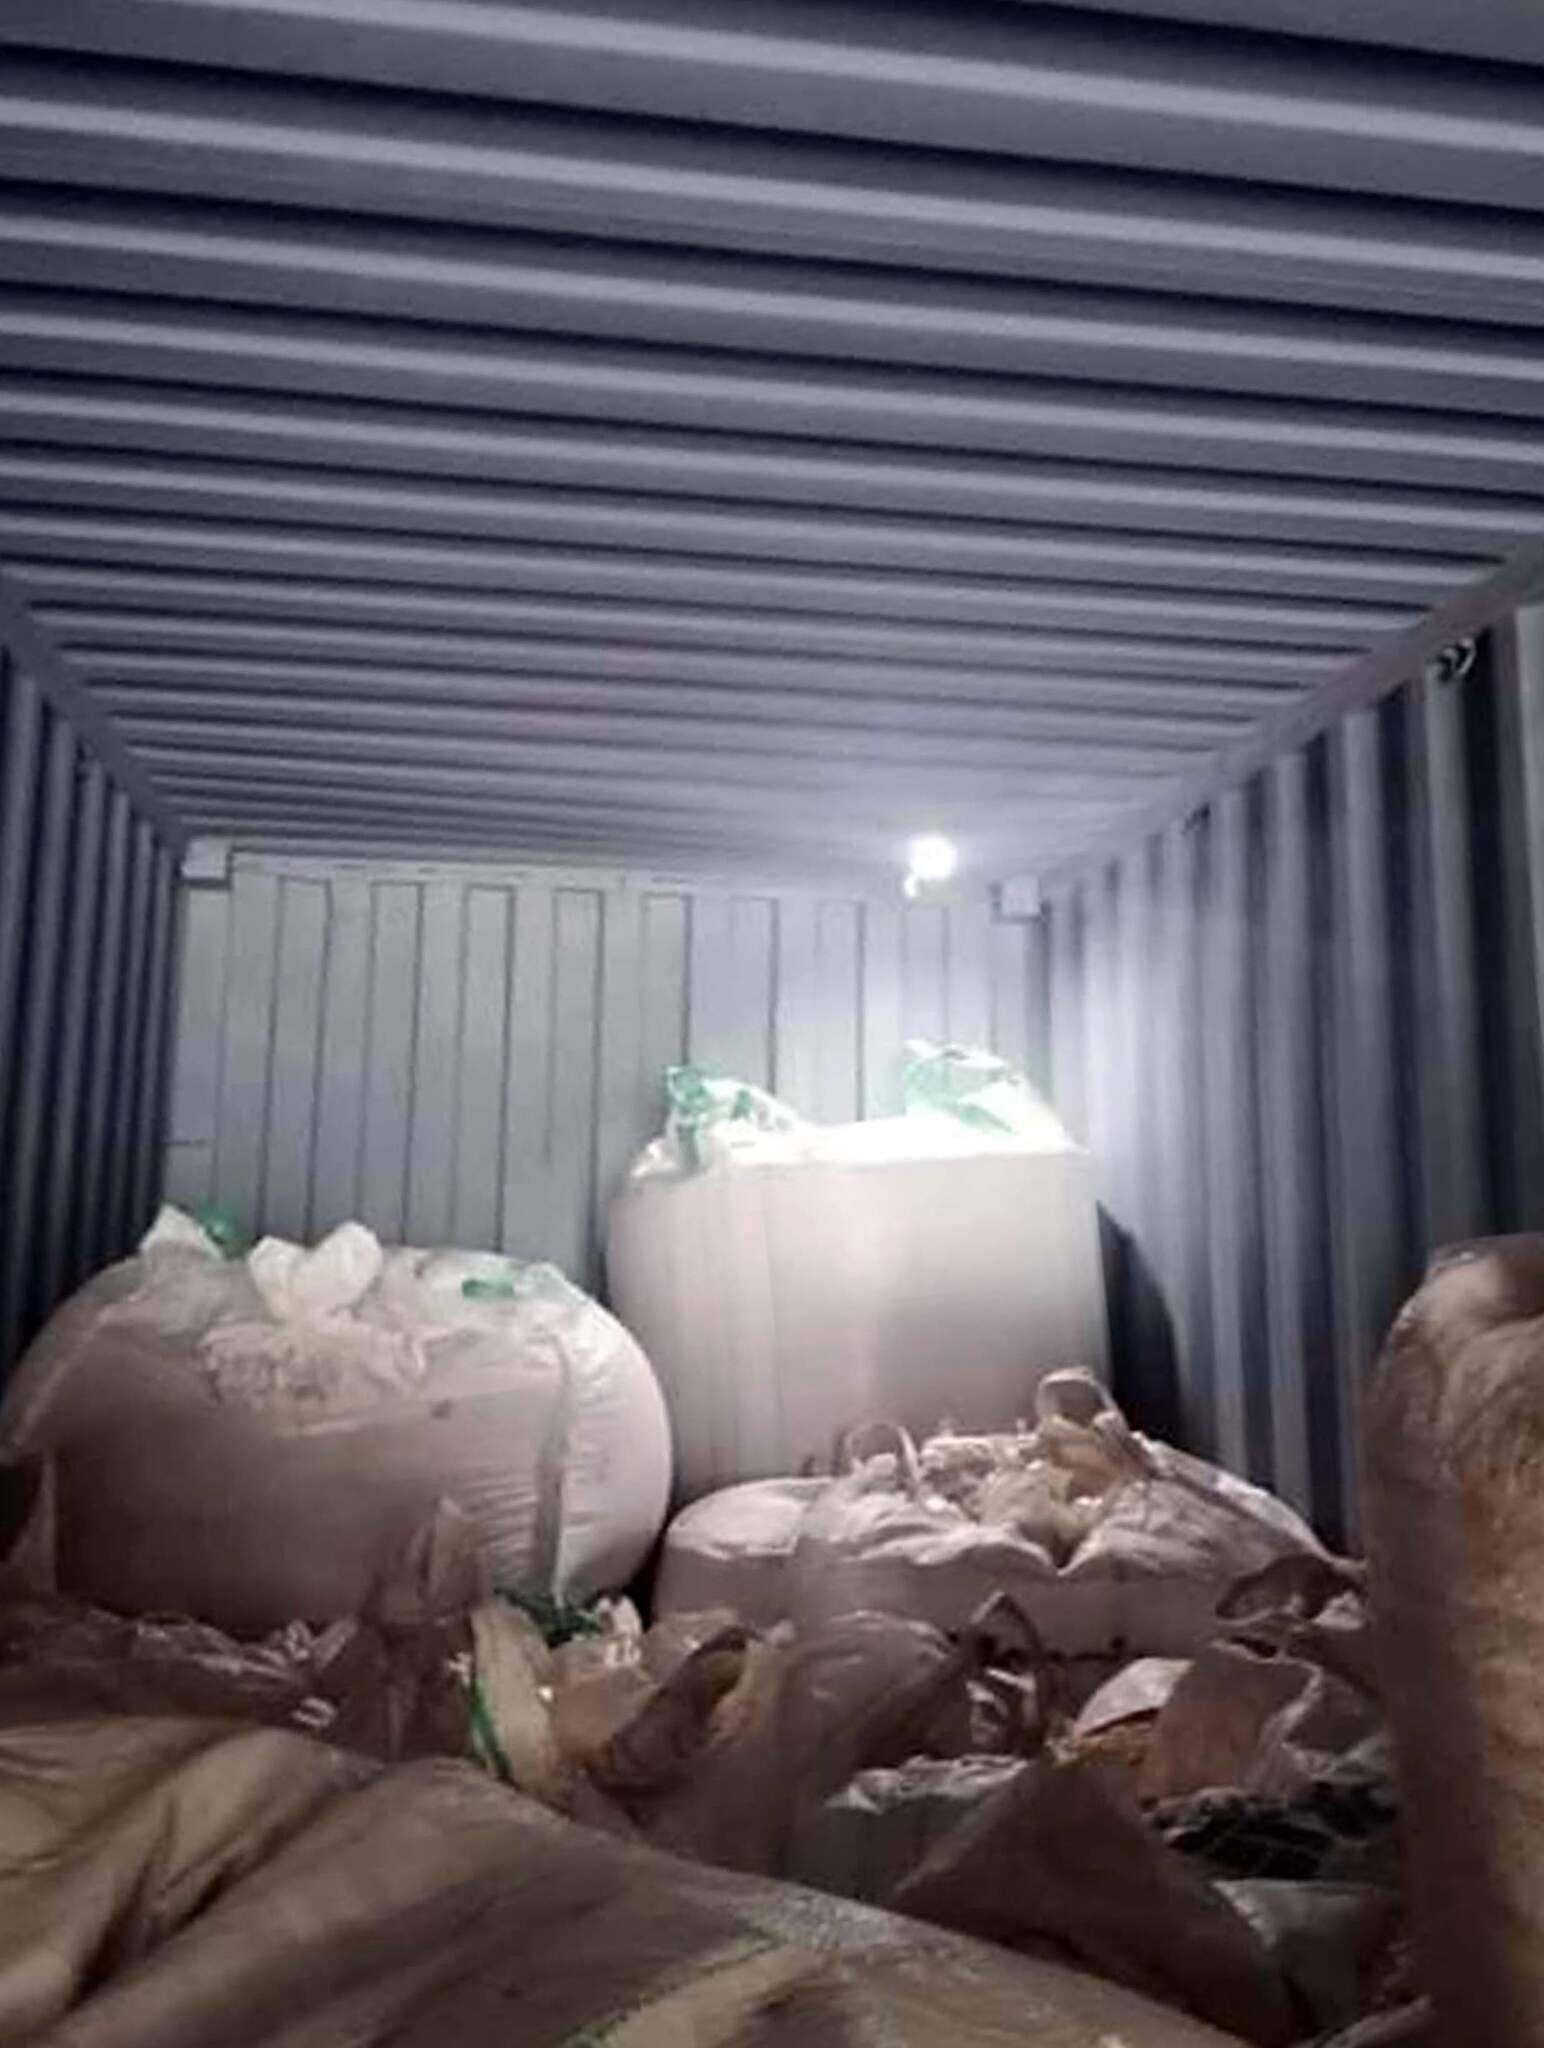  Nótese el agujero hecho en el techo del contenedor que salió de Paraguay y en cuyo interior se ven las bolsas completamente desordenadas cuando llegaron a destino.